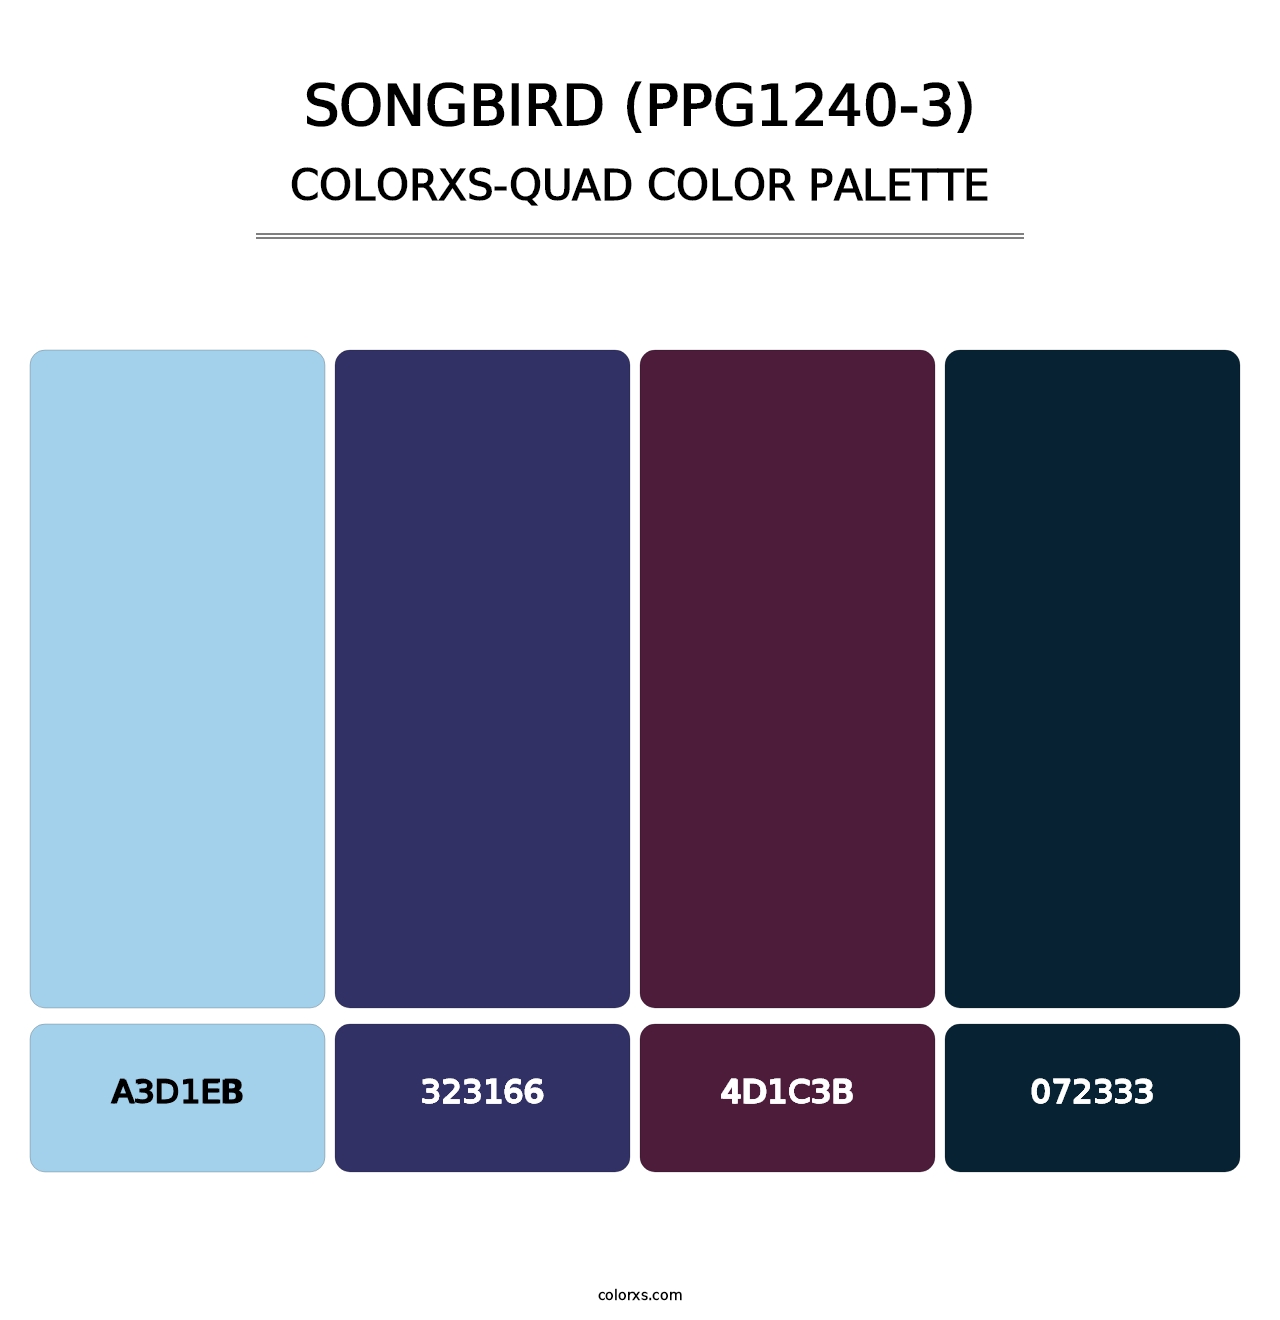 Songbird (PPG1240-3) - Colorxs Quad Palette